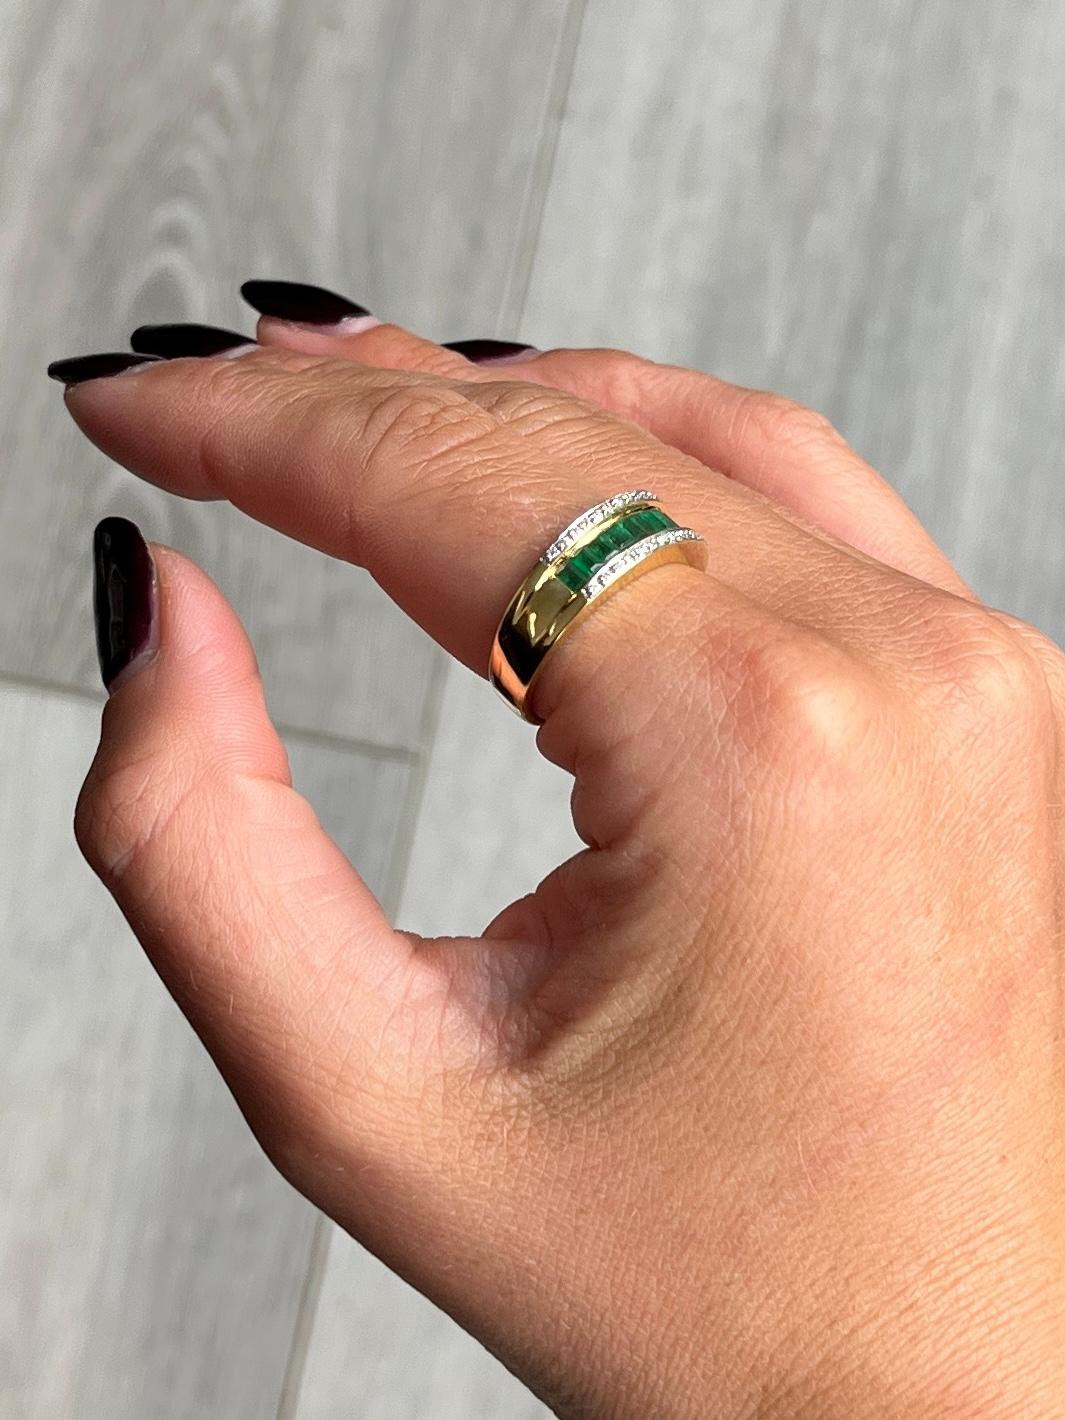 Die Smaragdschliff Smaragde in diesem Ring sind schön und hell und insgesamt 48pts. Oberhalb und unterhalb der Reihe der hellen Smaragde befinden sich Diamanten. Jeder Diamant misst 1pt. Der Ring ist aus 18 Karat Gold modelliert.

Ringgröße: Q oder